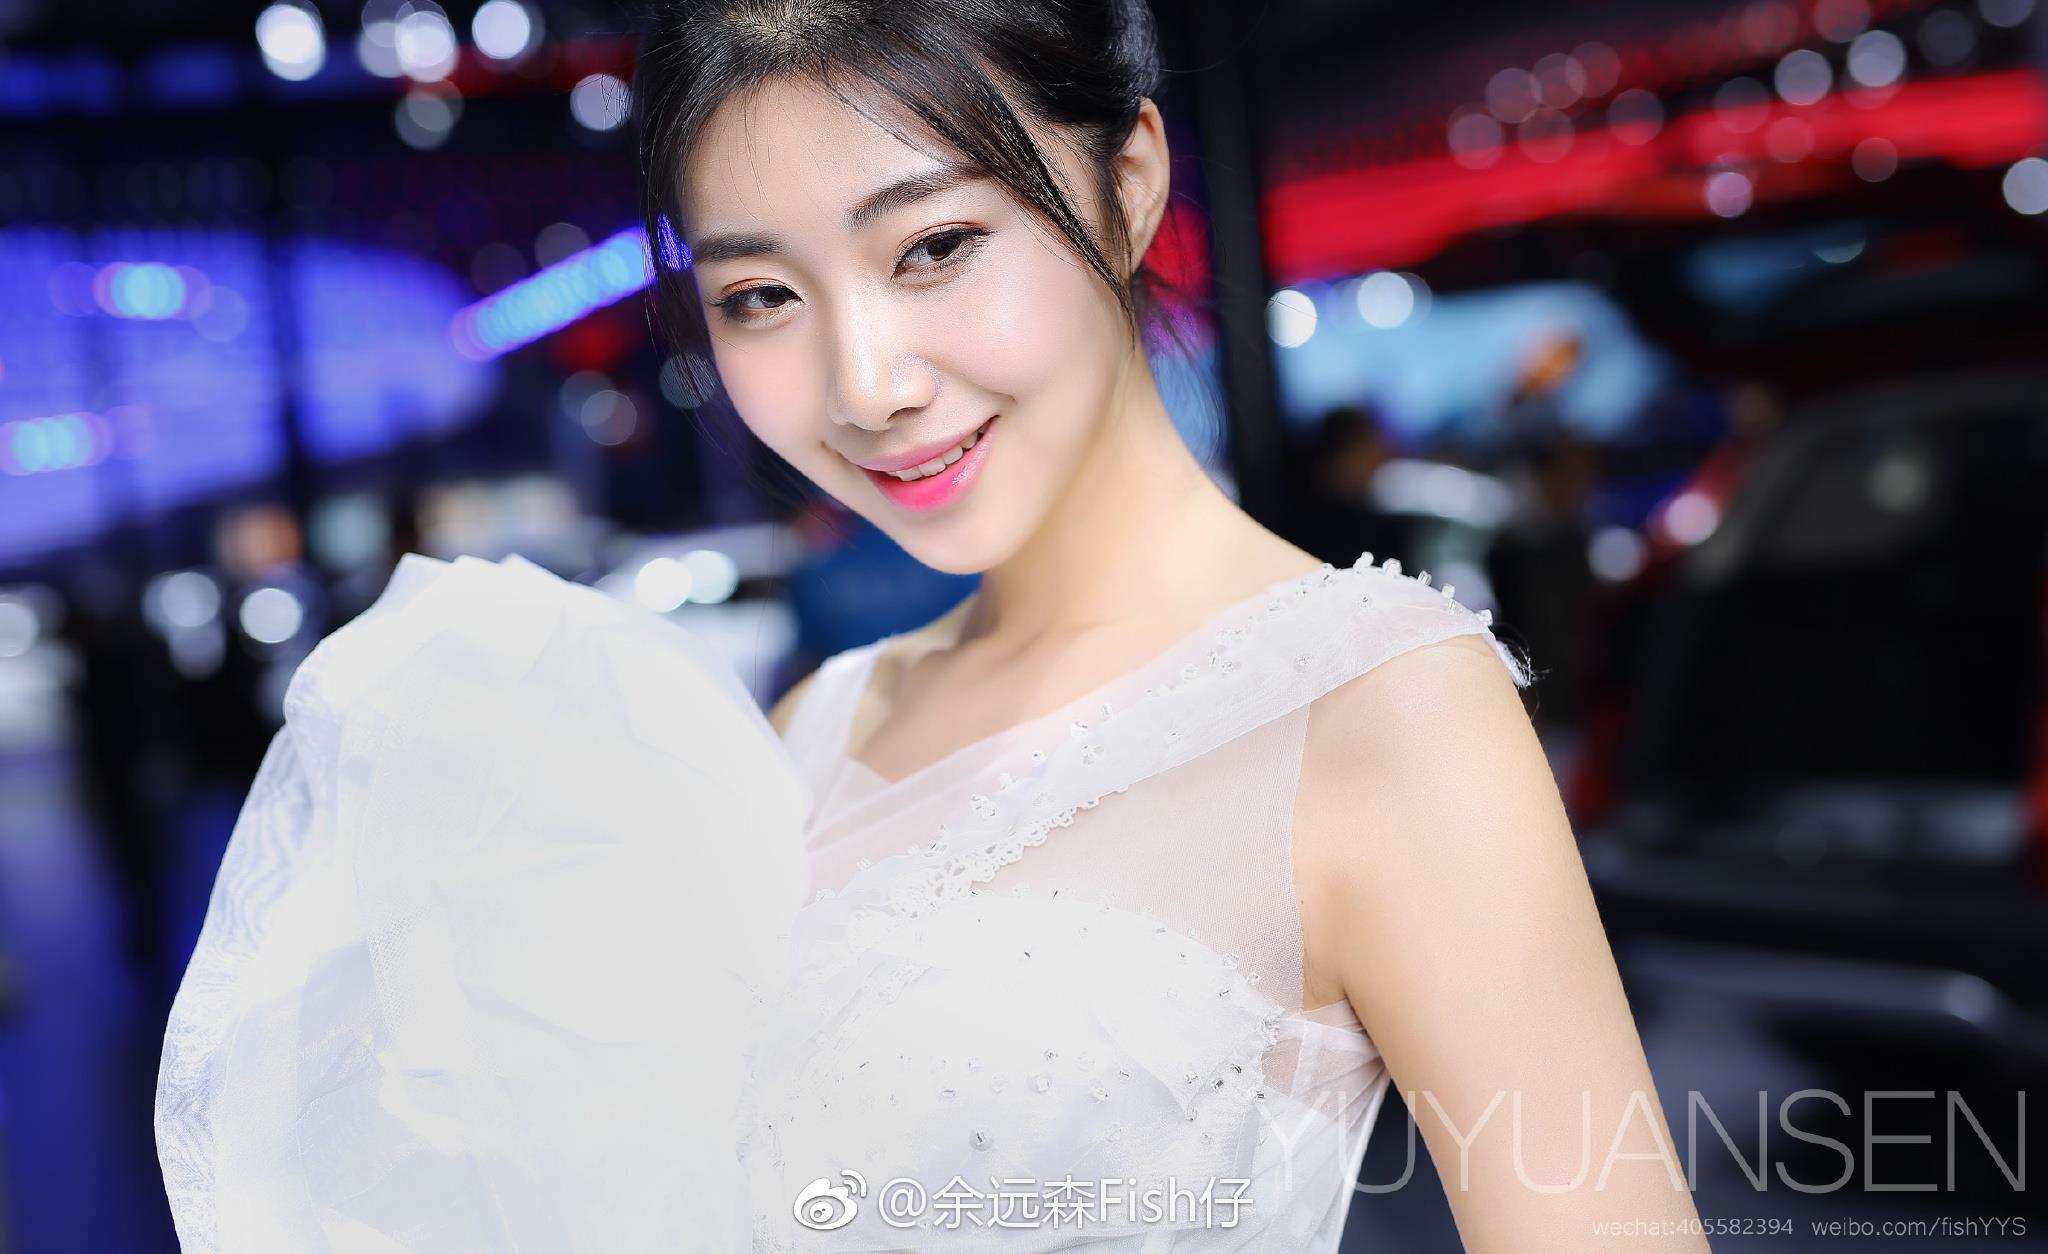 2017广州车展 比亚迪展台 美女车模 高以宁 白色婚纱礼裙,